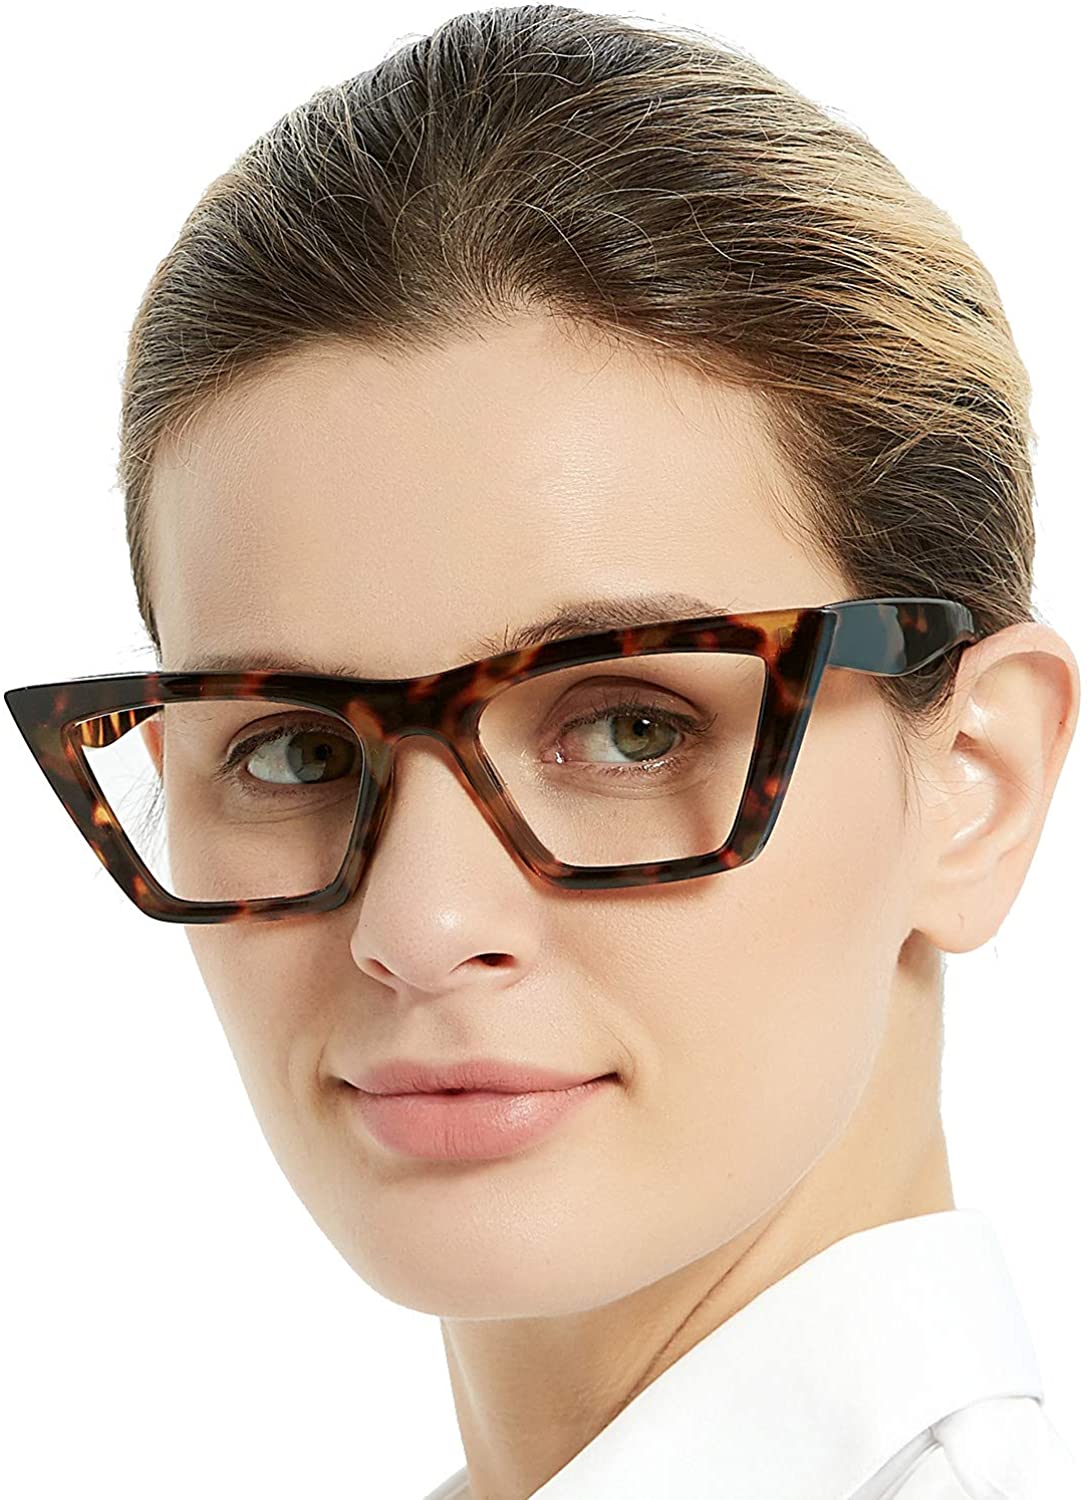 Reading Glasses for Women Cat Eye Fashion Reader